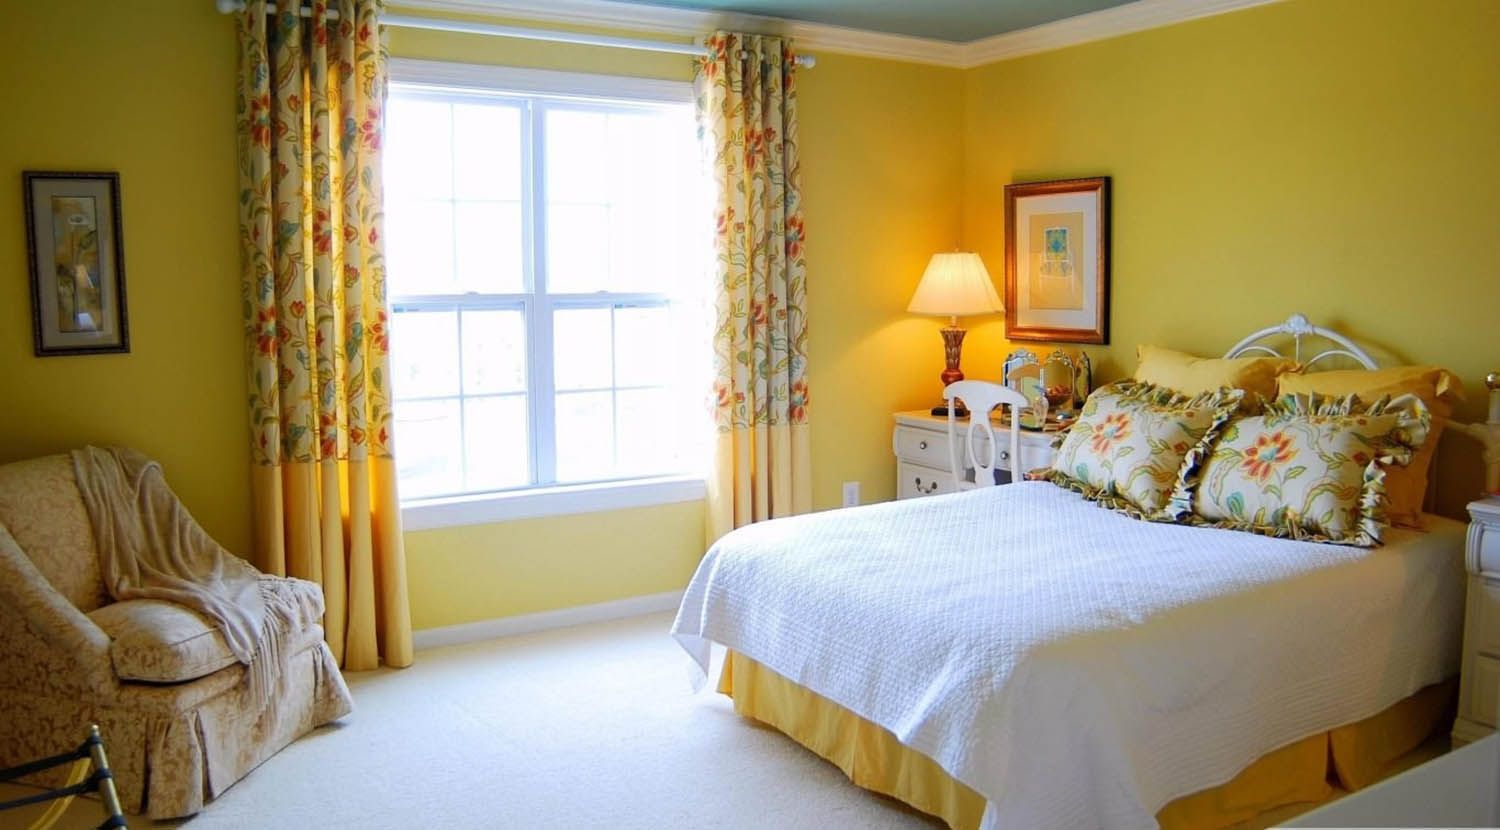 Желтый цвет стен наполнит комнату теплом